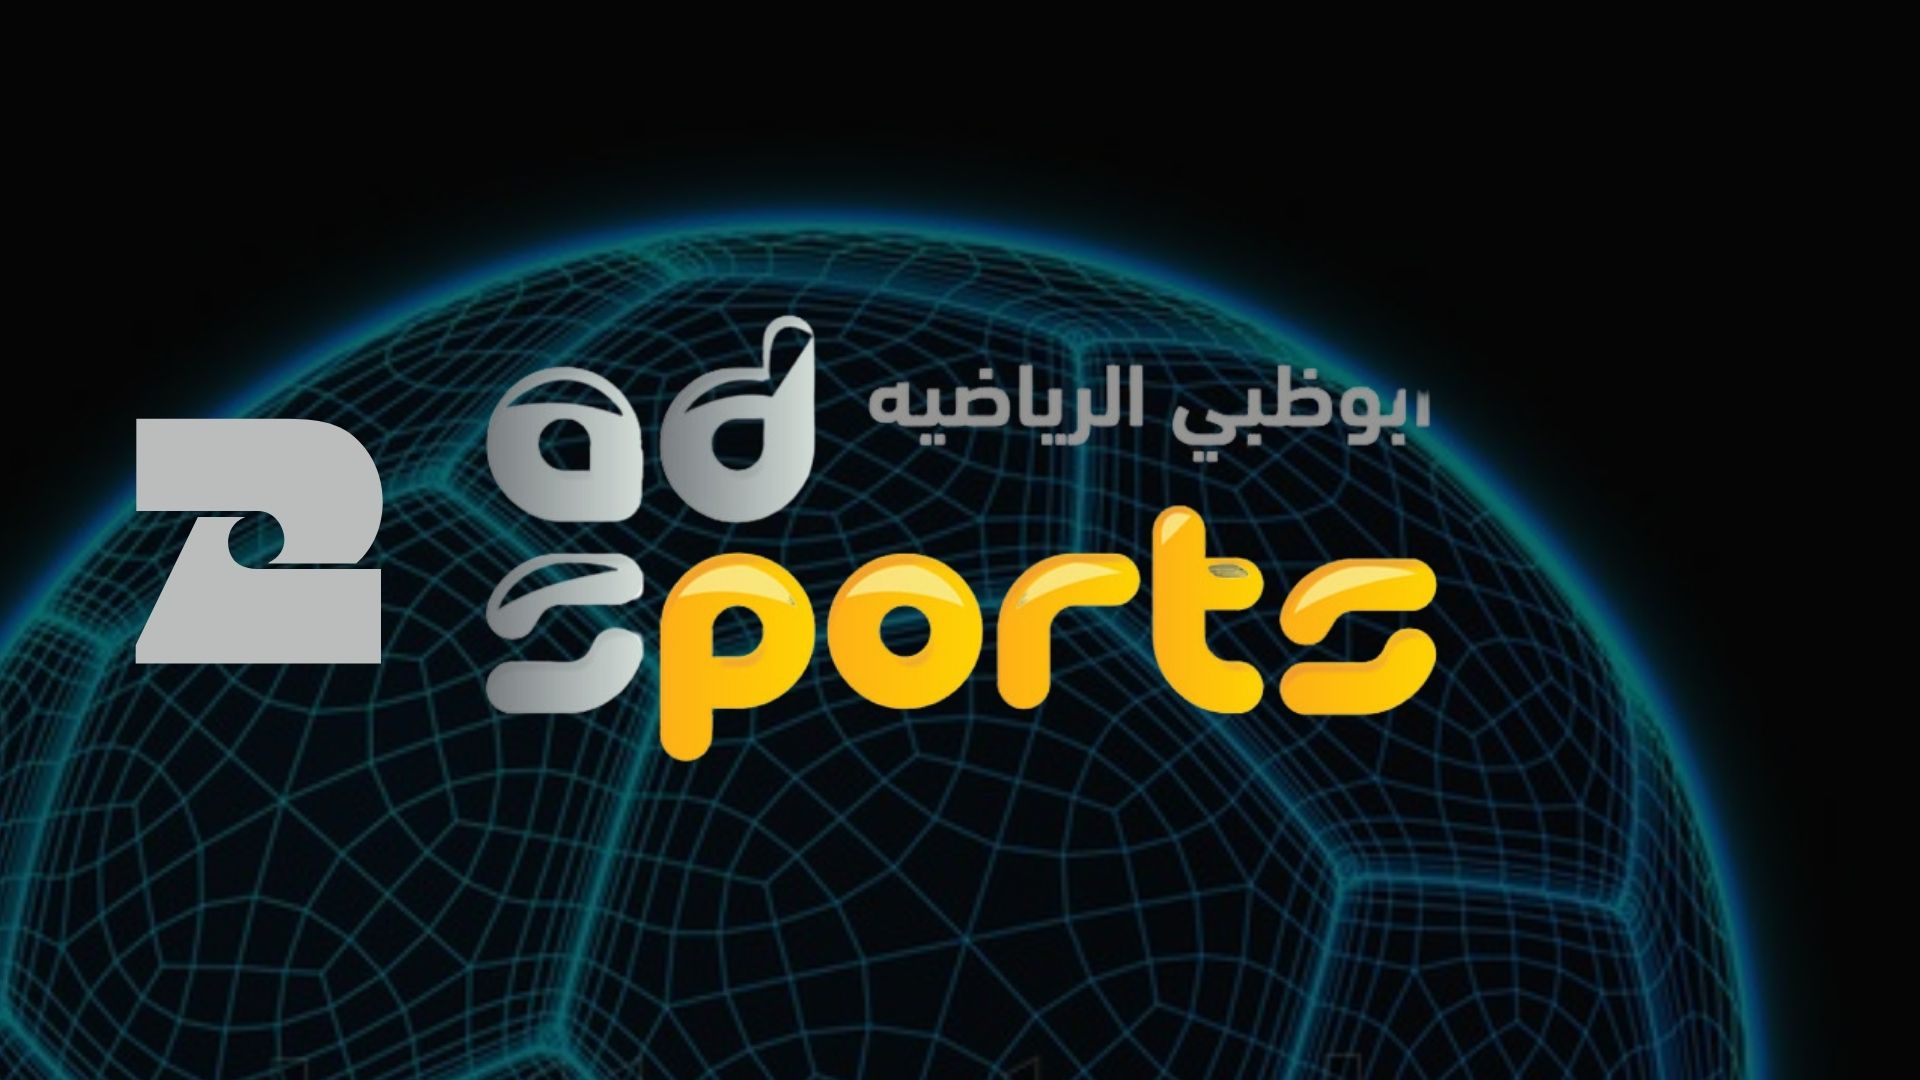 تردد قناة أبو ظبي الرياضية